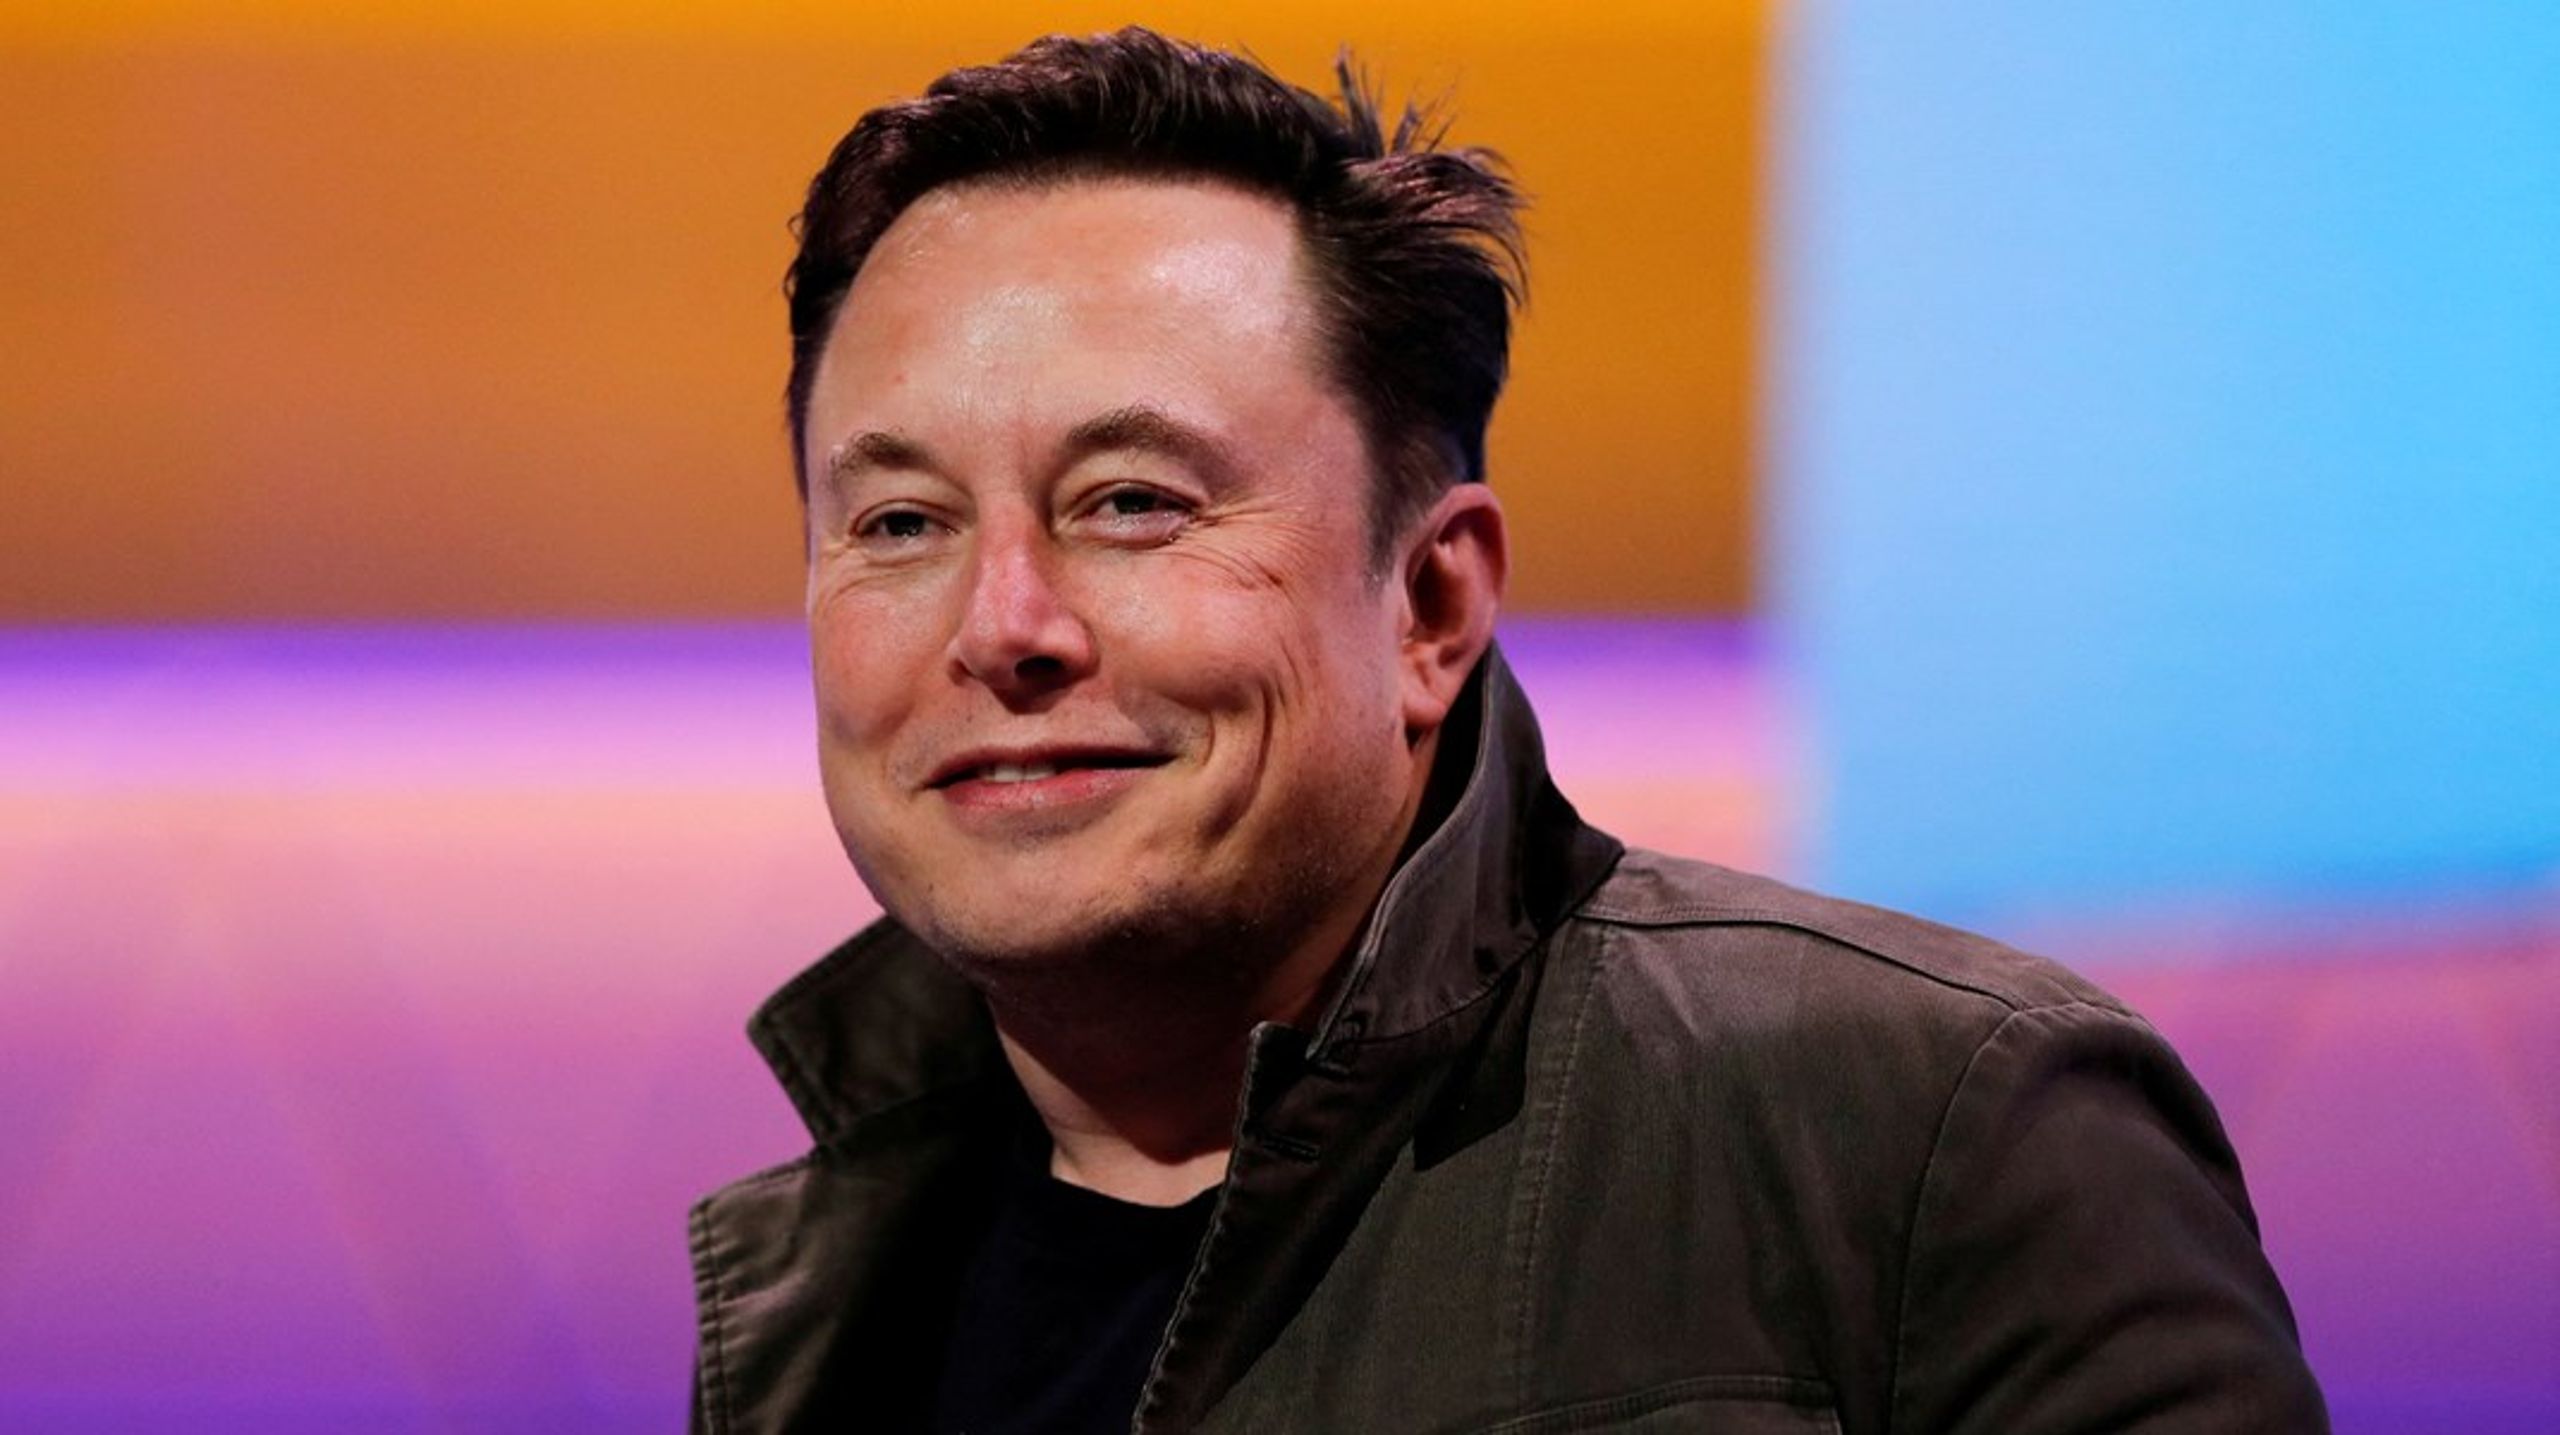 Teslaejeren og rigmanden Elon Musk købte i foråret det sociale medie Twitter. Han har netop foretaget massefyringer, der nær ved halverer medarbejderstaben.